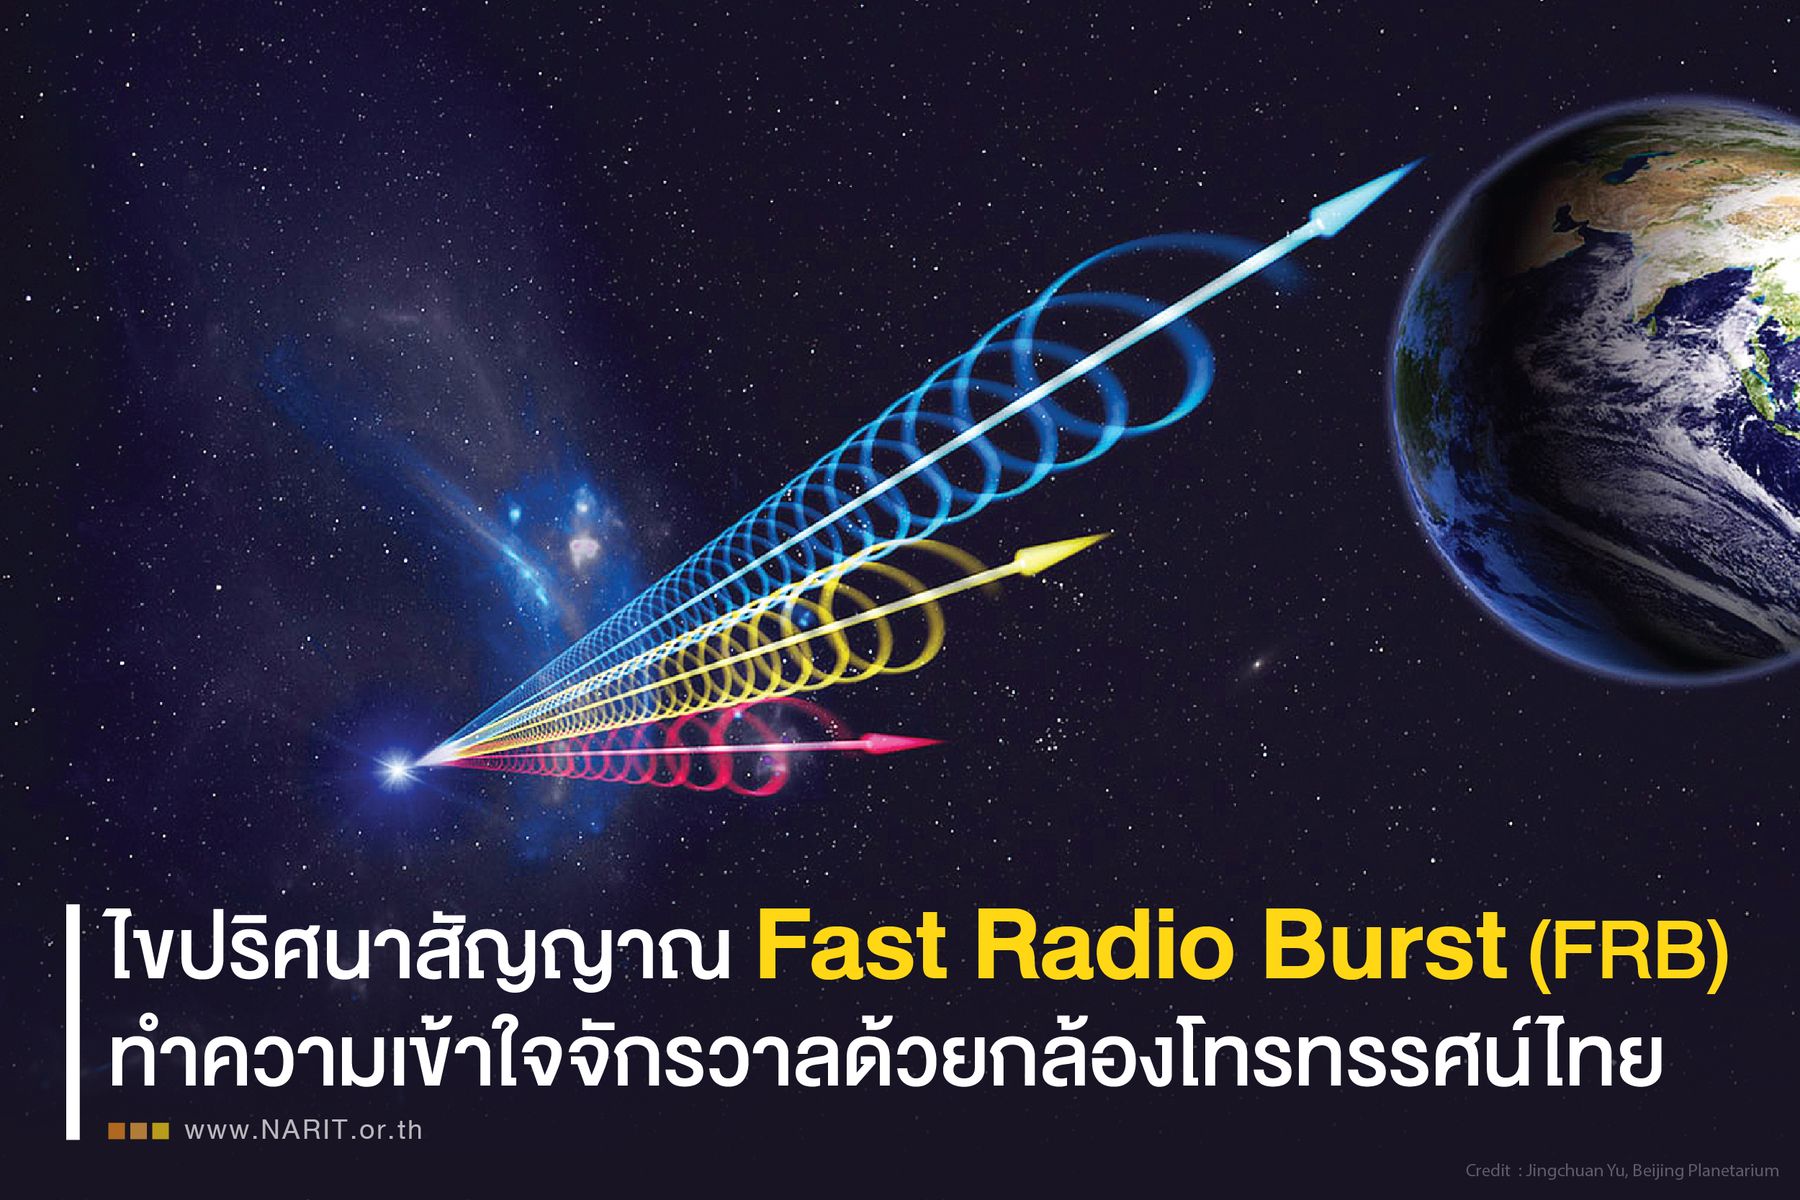 Ep. 25 ไขปริศนาสัญญาณ Fast Radio Burst (FRB) ทำความเข้าใจจักรวาลด้วยกล้องโทรทรรศน์ไทย